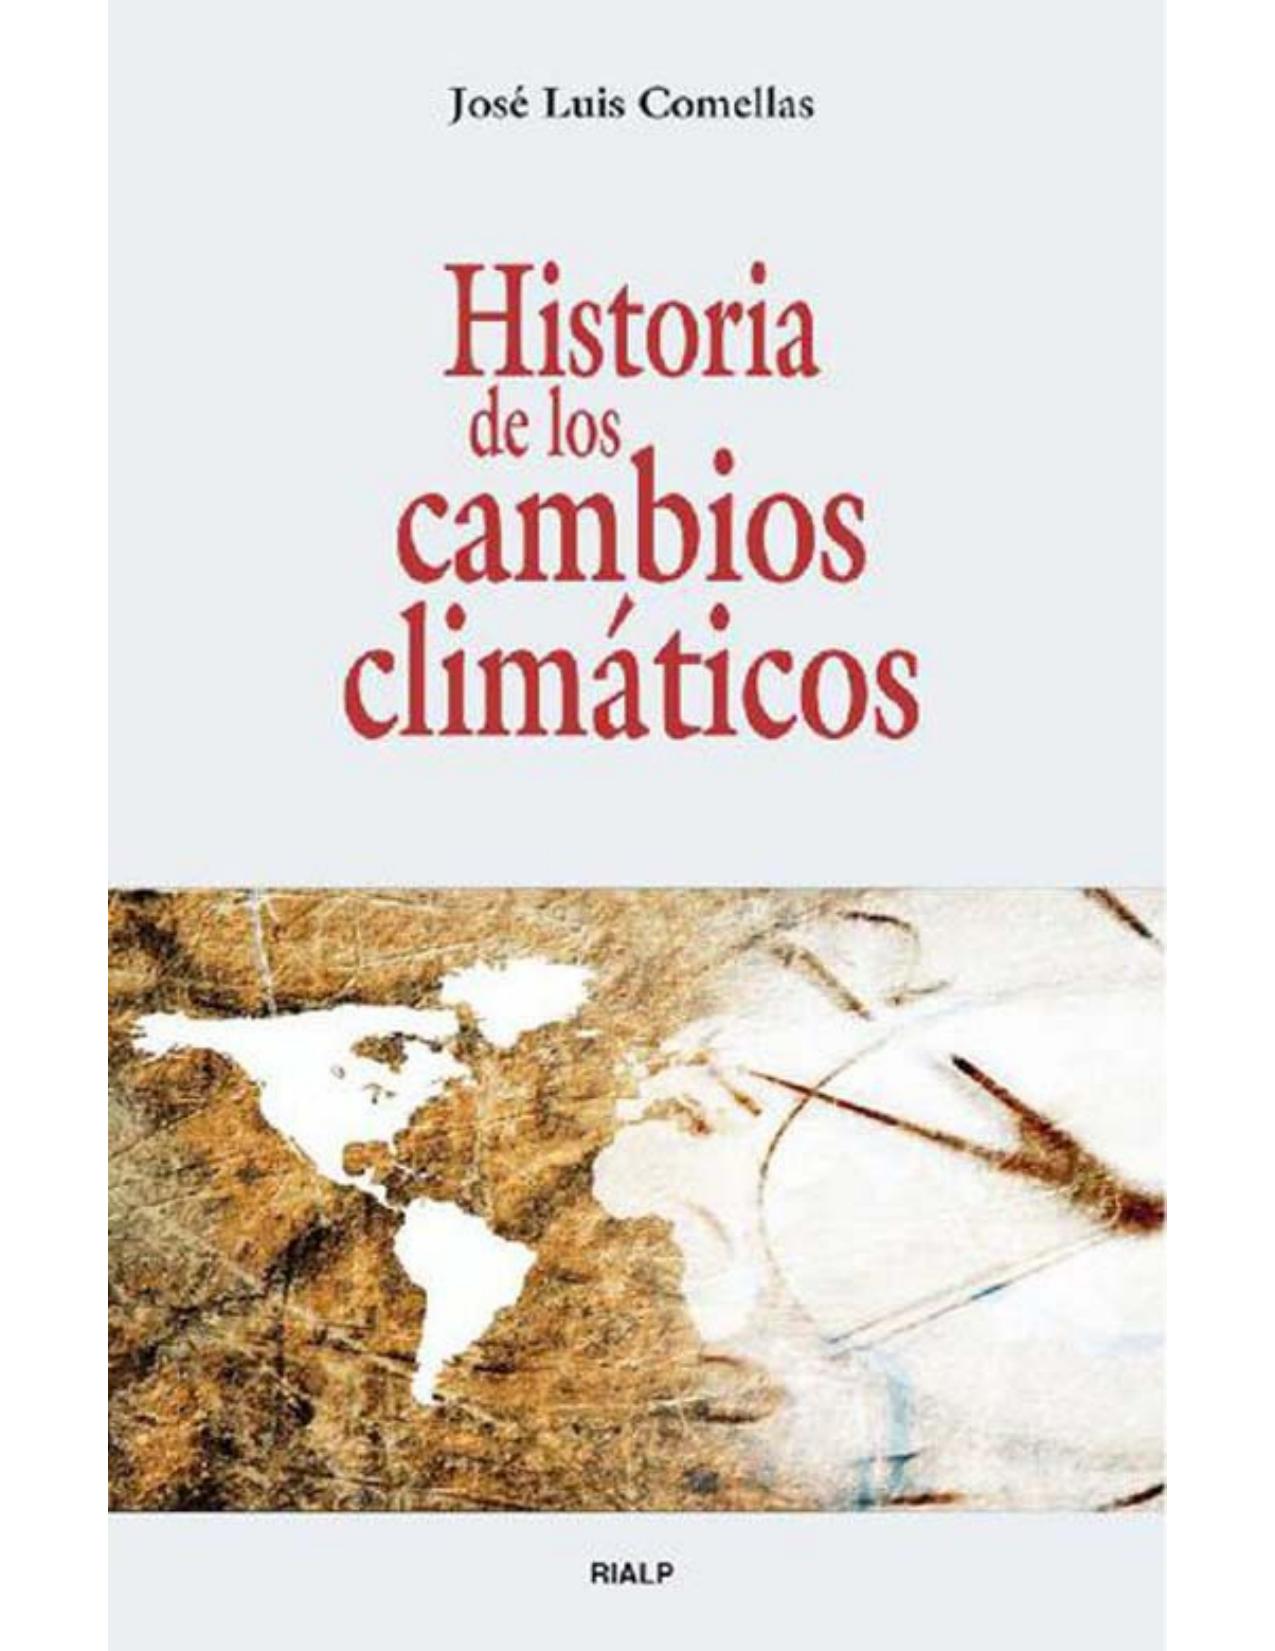 Historia de los cambios climáticos